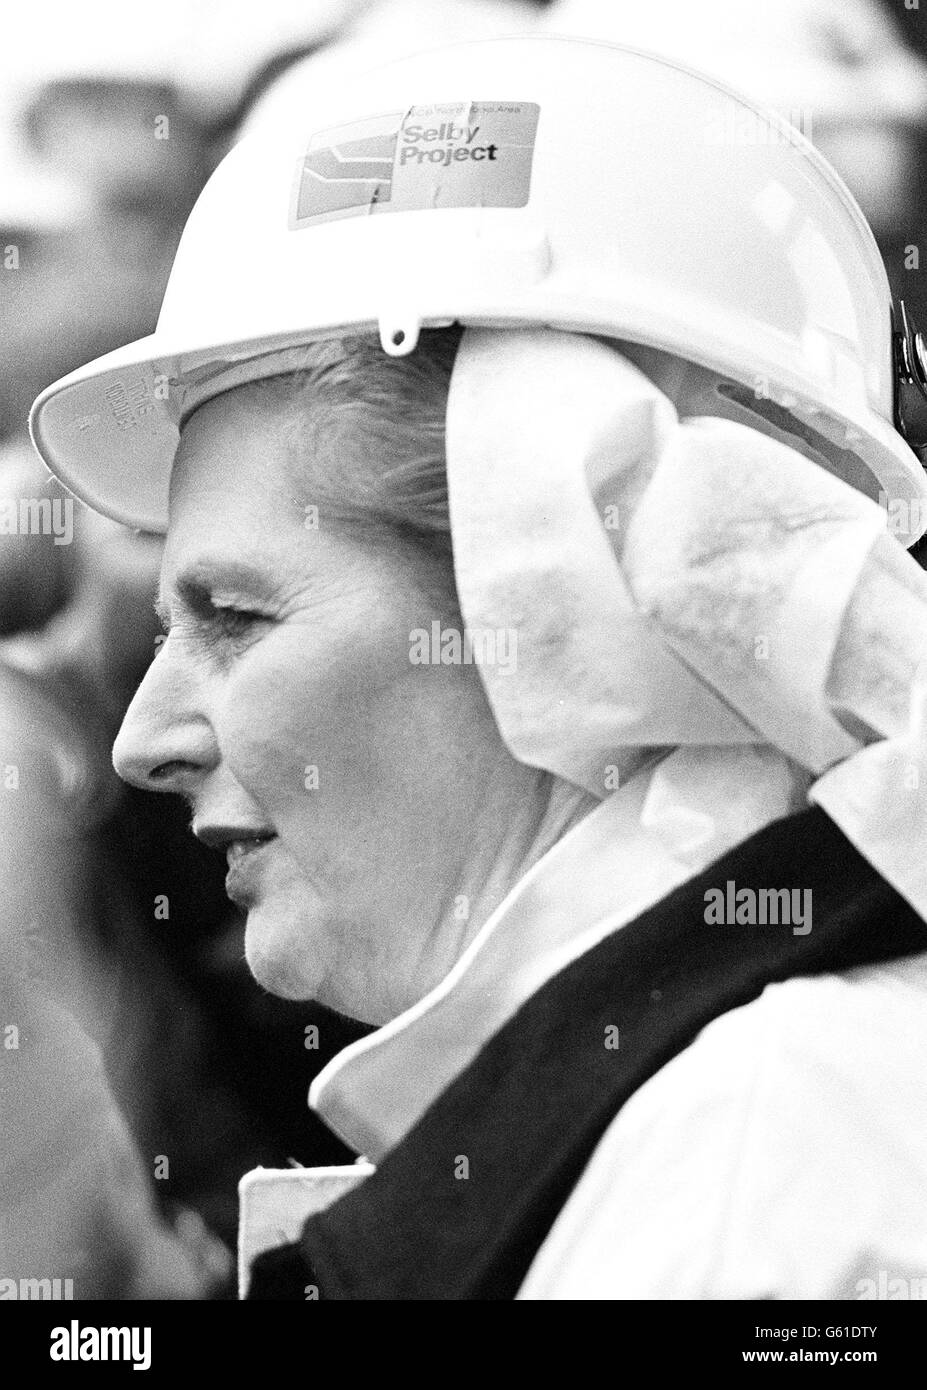 Casque de mineur pour le Premier ministre, Mme Margaret Thatcher, lorsqu'elle a passé une demi-heure sur un puits de mine à la mine de charbon de Wistow, dans le champ de charbon de selby. 04/03/04: Les placards de charbon et non de Dole étaient sauvés des armoires poussiéreuses, alors que les anciens mineurs et leurs familles à travers le pays se préparaient à organiser une série d'événements pour marquer le 20e anniversaire de la grève amère des mineurs. La grève a commencé dans le Yorkshire en mars 1984 et en quelques jours, la moitié des travailleurs mineurs du pays avaient marché de suite au-dessus de la fermeture des puits. Banque D'Images